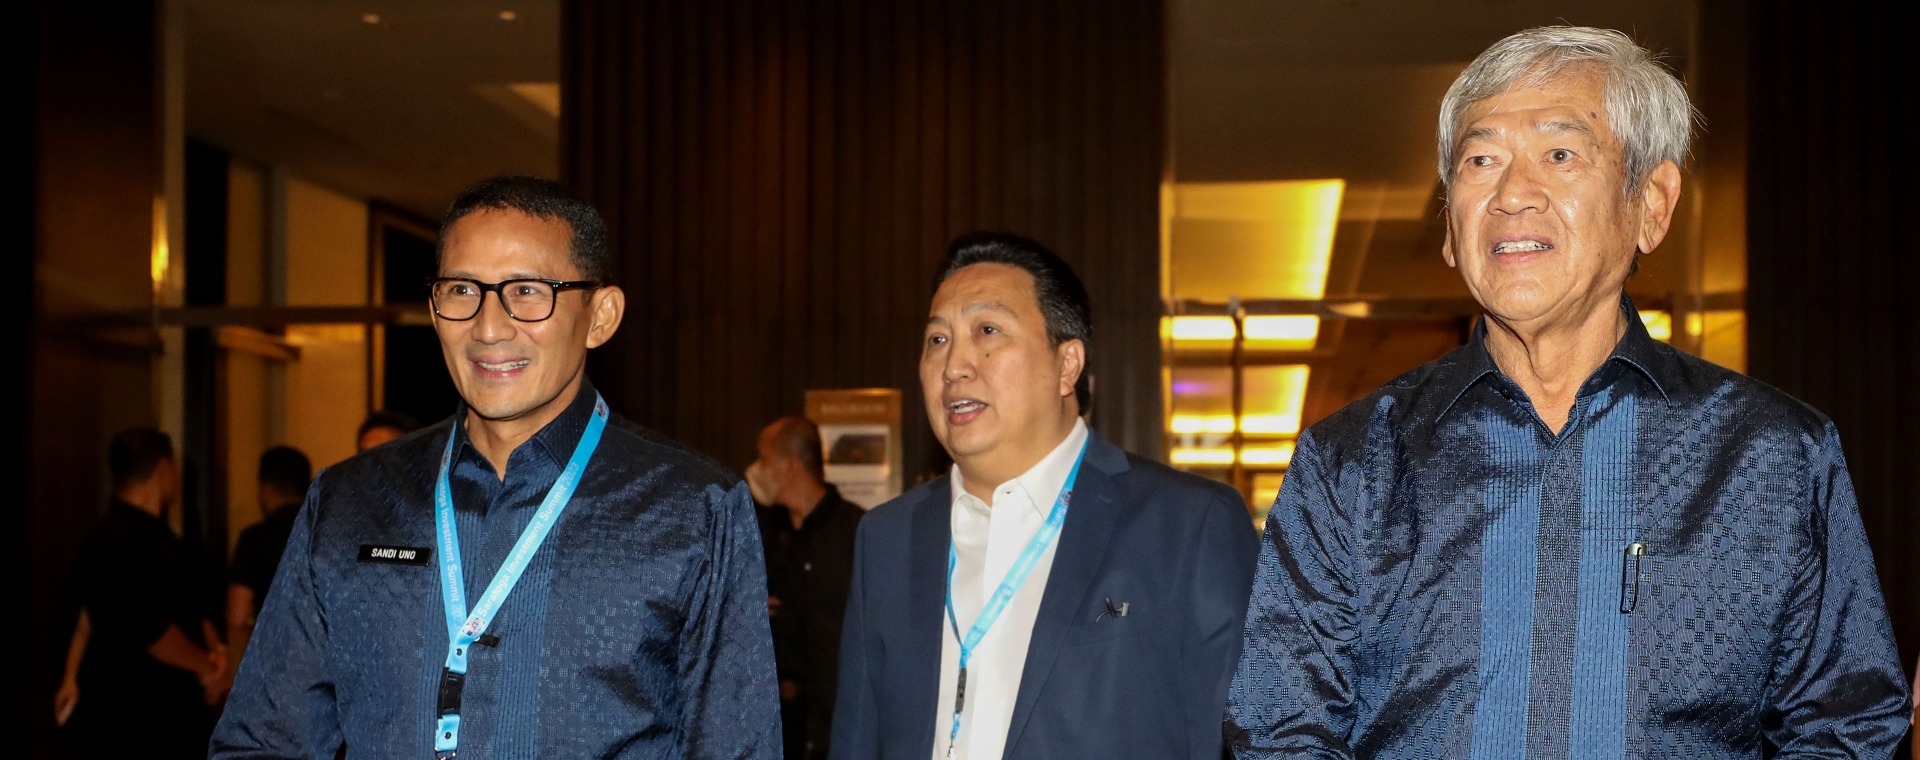 Menteri Pariwisata dan Ekonomi Kreatif Sandiaga Uno (dari kiri) bersama dengan Presiden Direktur PT Adaro Energy Indonesia Tbk. (ADRO) Garibaldi Thohir dan Pendiri PT Saratoga Investama Sedaya Tbk. (SRTG) Edwin Soeryadjaya saat acara Saratoga Invesment Summit 2023 di Jakarta, Kamis (26/1/2023). Bisnis/Eusebio Chrysnamurti